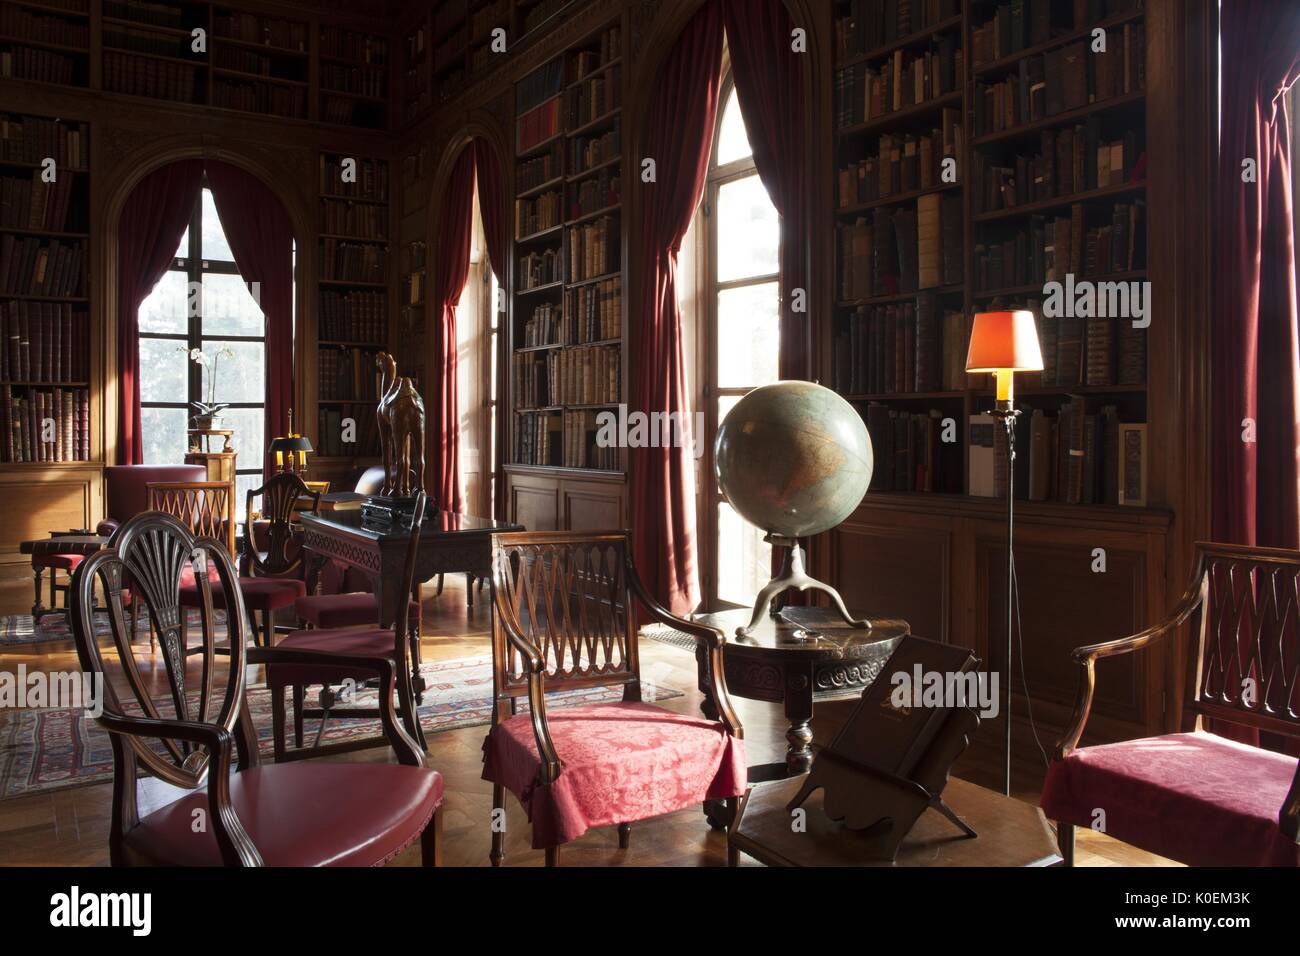 Ein eingerichtetes Wohnzimmer, es gibt eine Menge Stühle aus Holz und eingebaute Bücherregale zieren die Wände entlang, mit deckenhohen Fenstern, 2014. Mit freundlicher Genehmigung von Eric Chen. Stockfoto